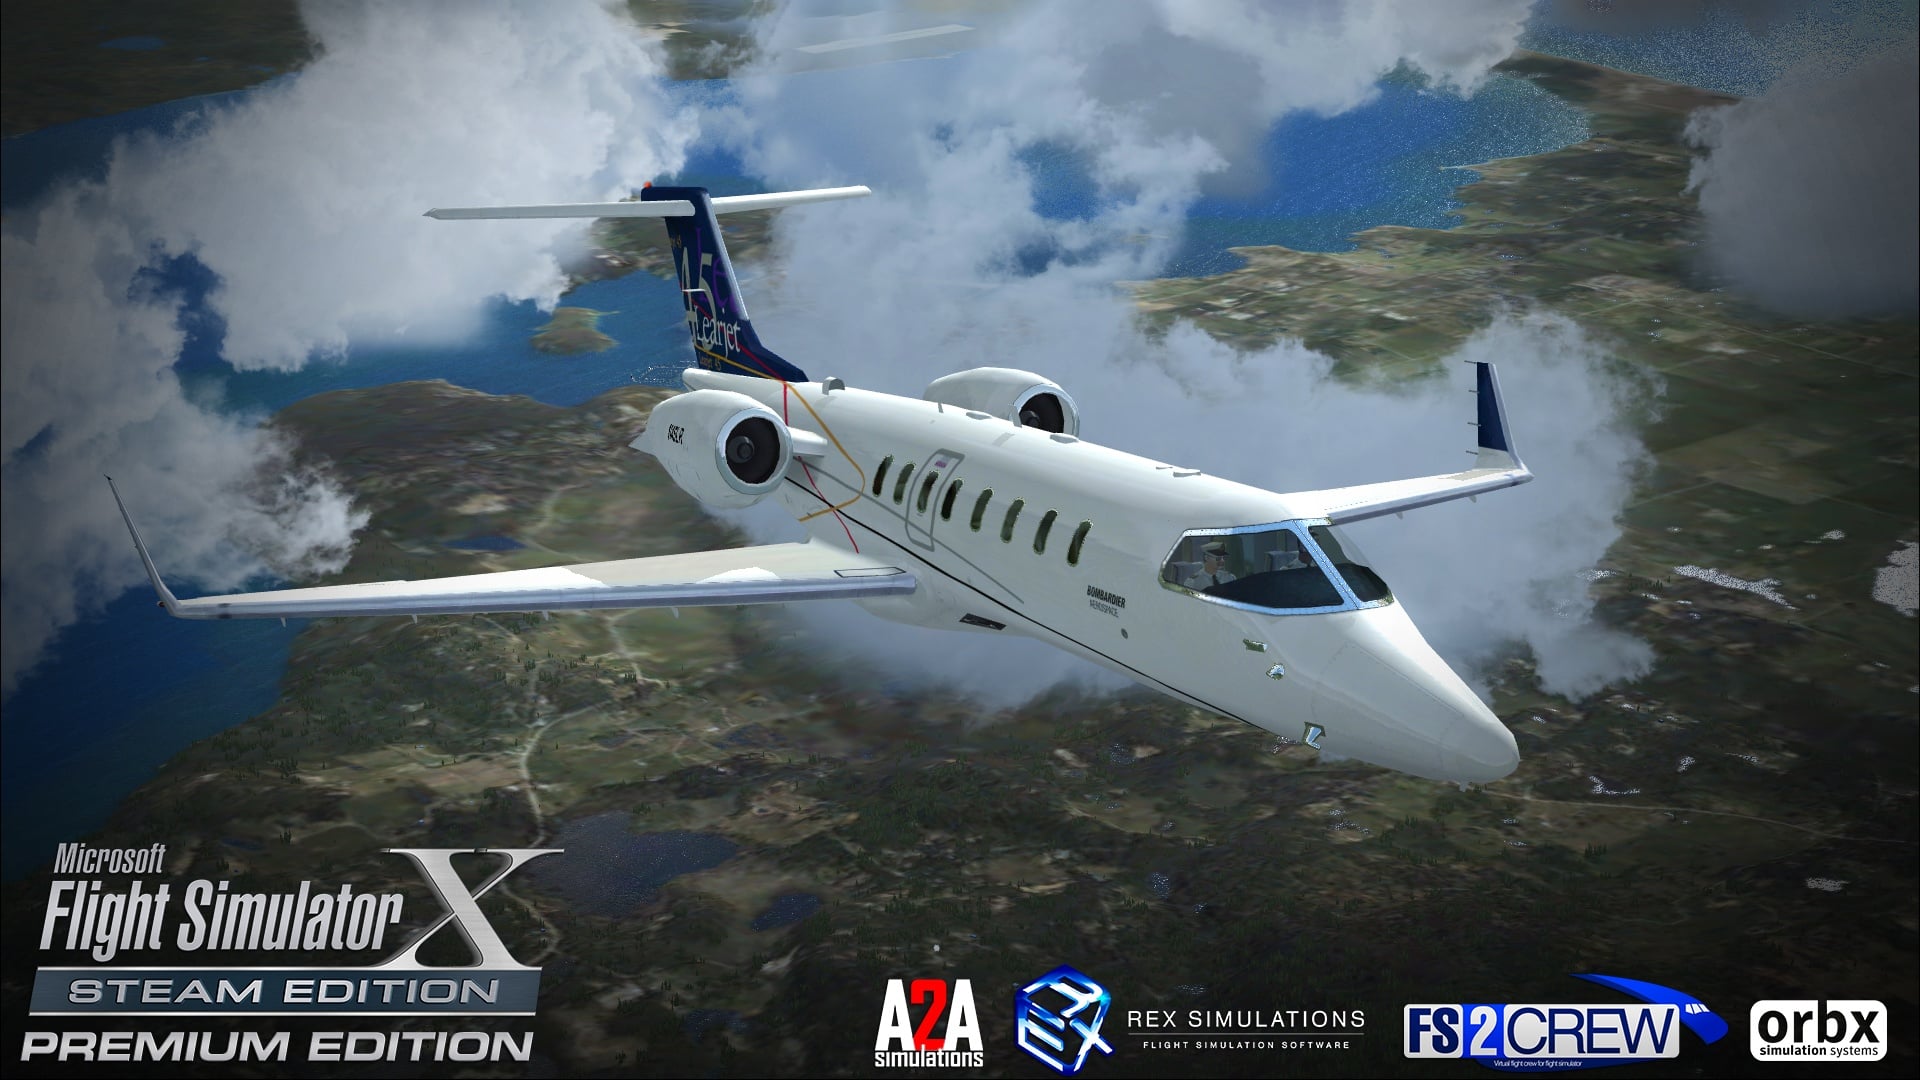 Flight simulator free download full version mac games